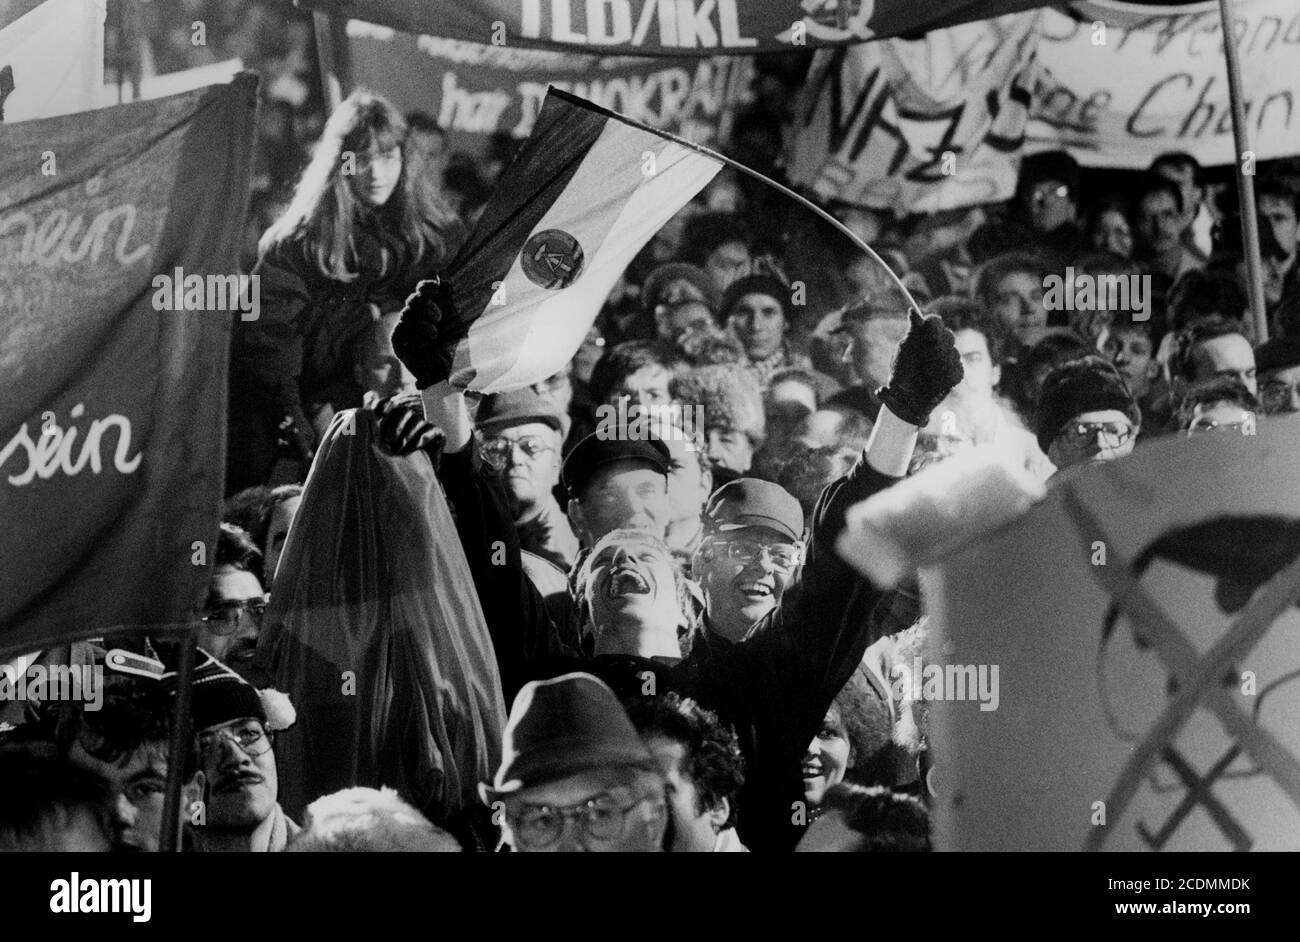 Manifestation contre le néo-nazisme dans la RDA devant le Mémorial soviétique de Treptow, peu après la chute du mur, 1990, Berlin, Allemagne Banque D'Images